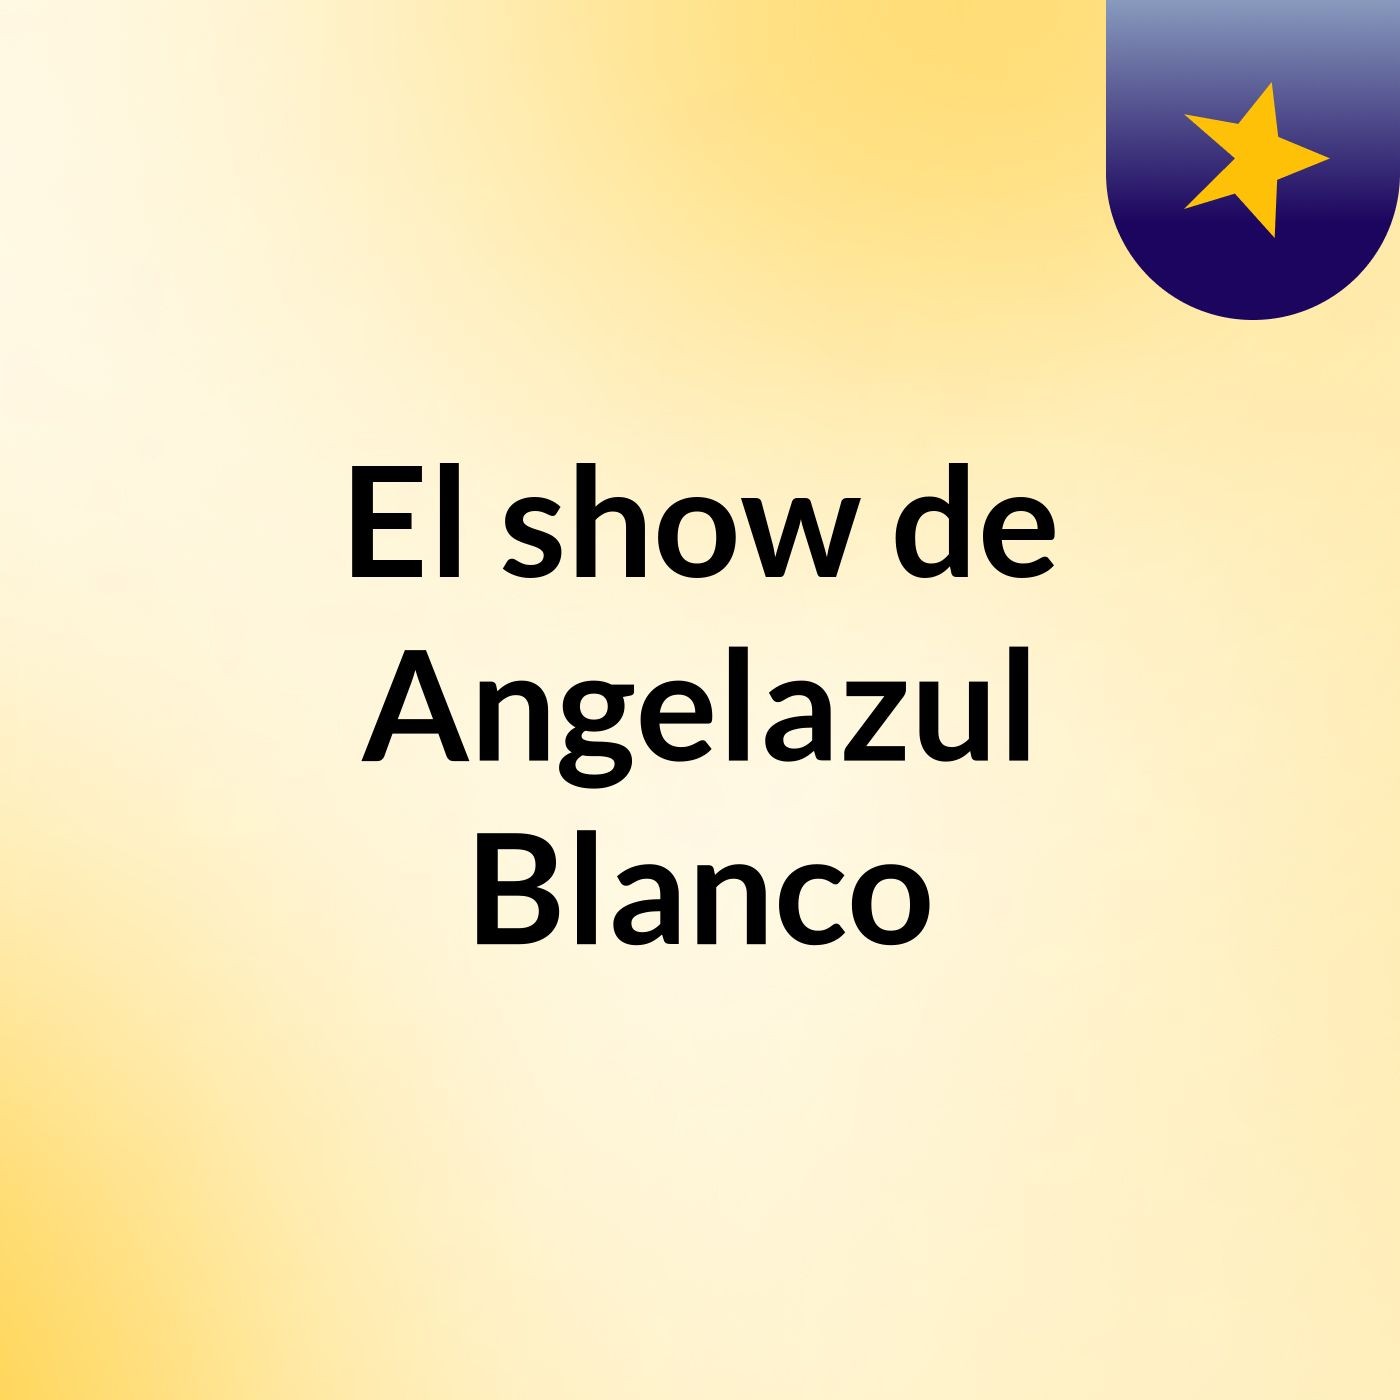 El show de Angelazul Blanco